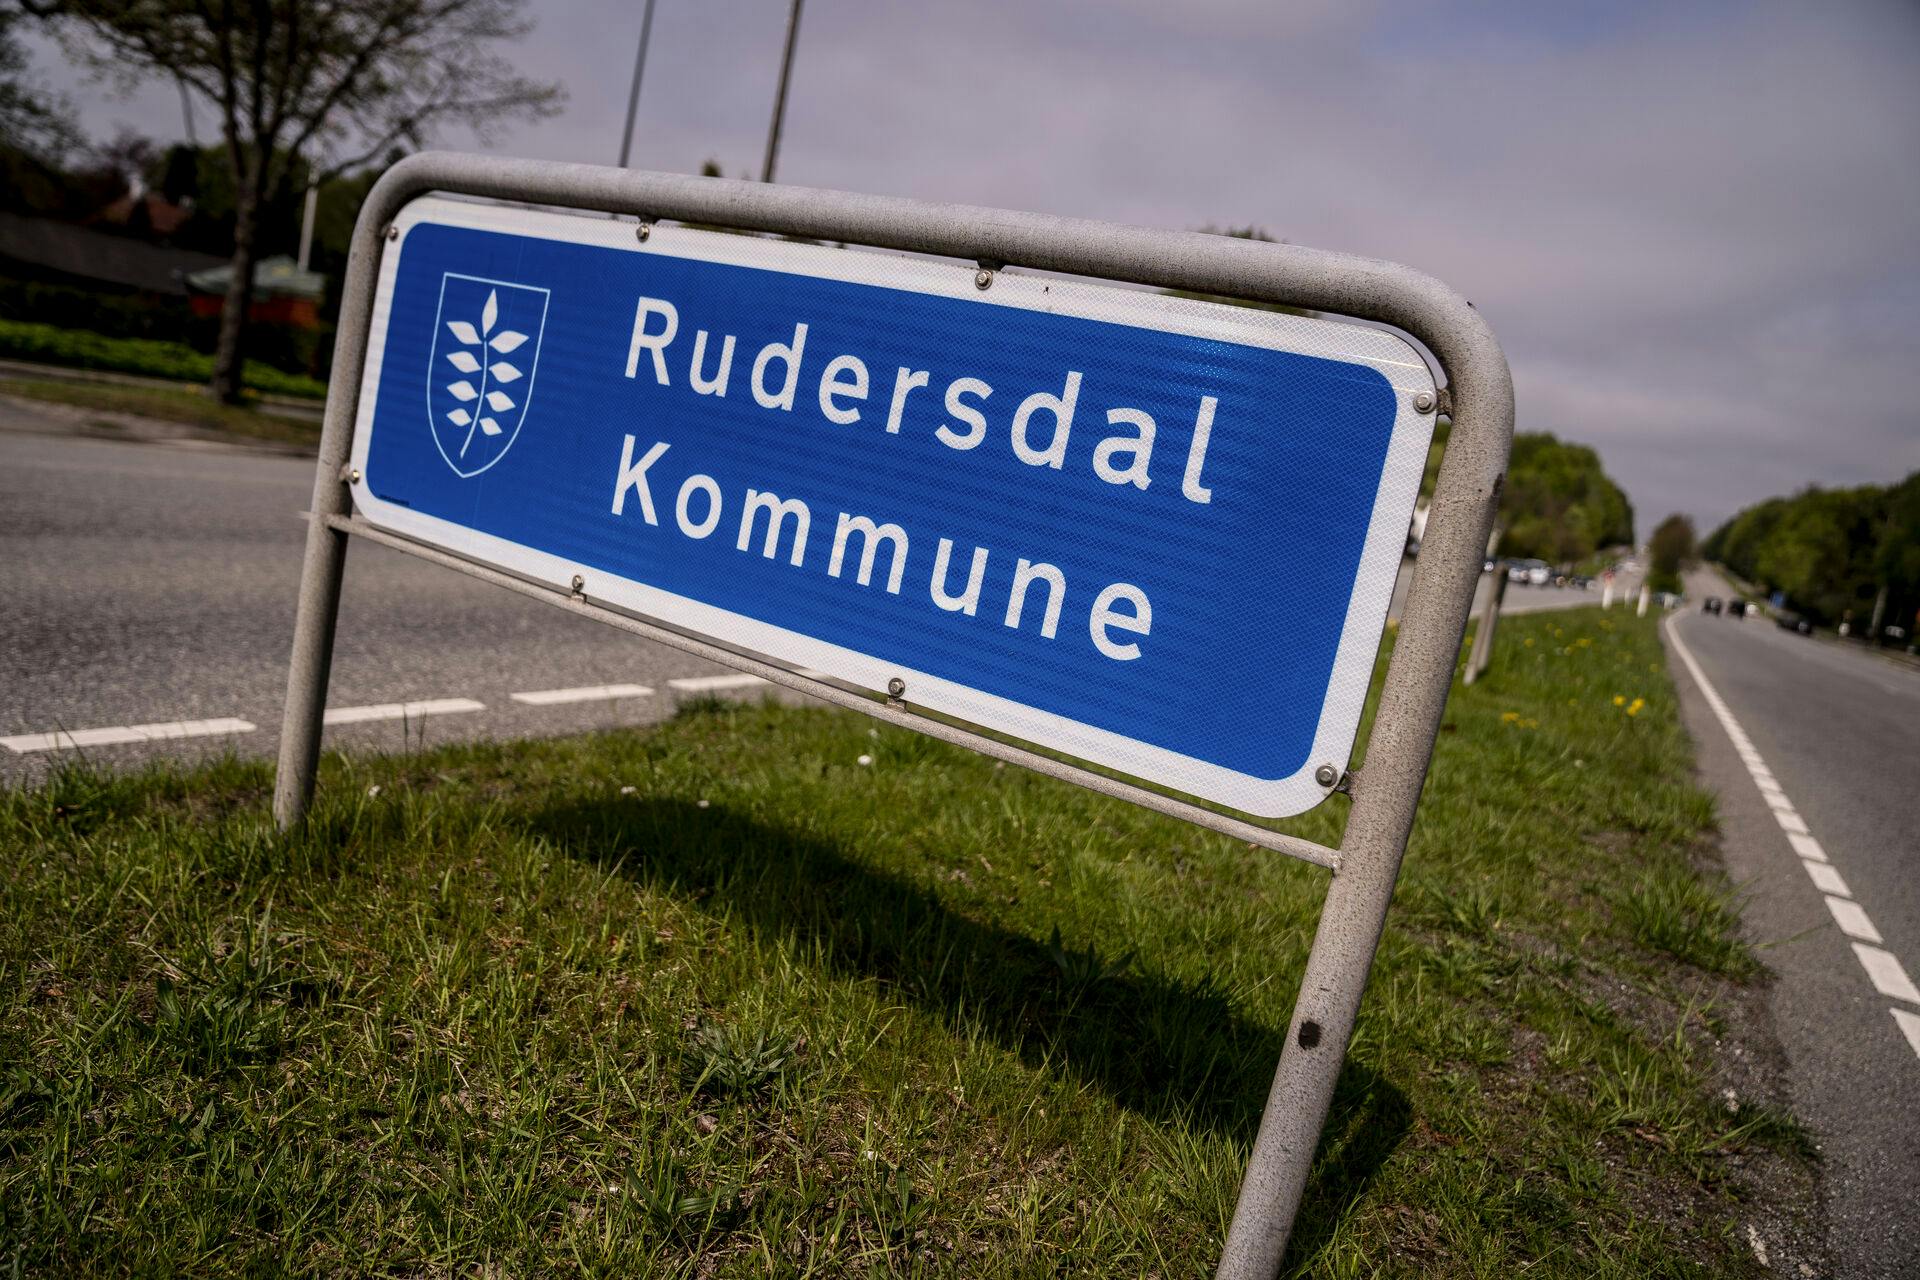 En lærervikar på Søholmsskolen i Rudersdal Kommune, er sigtet for voldtægt af en elev.